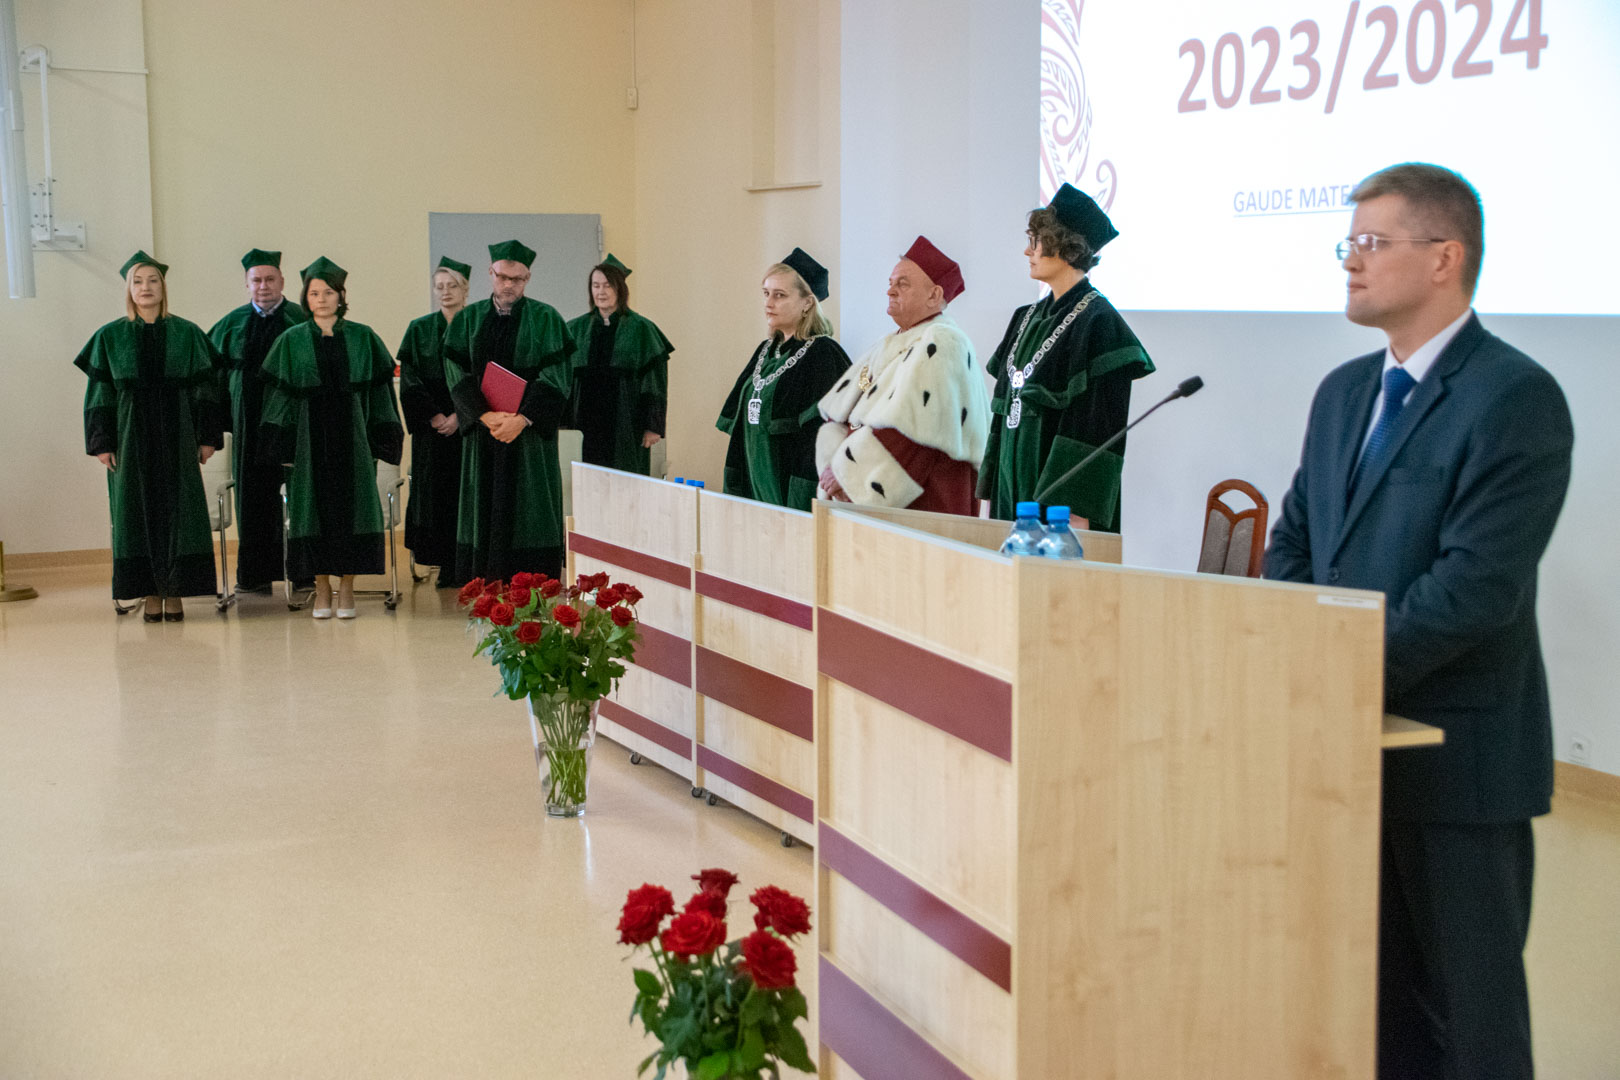 W dniu 14 października 2023 r. miała miejsce uroczysta inauguracja nowego roku akademickiego 2023/2024 w Wyższej Szkole Ekonomicznej w Białymstoku. Opis powyżej w treści dokumentu.